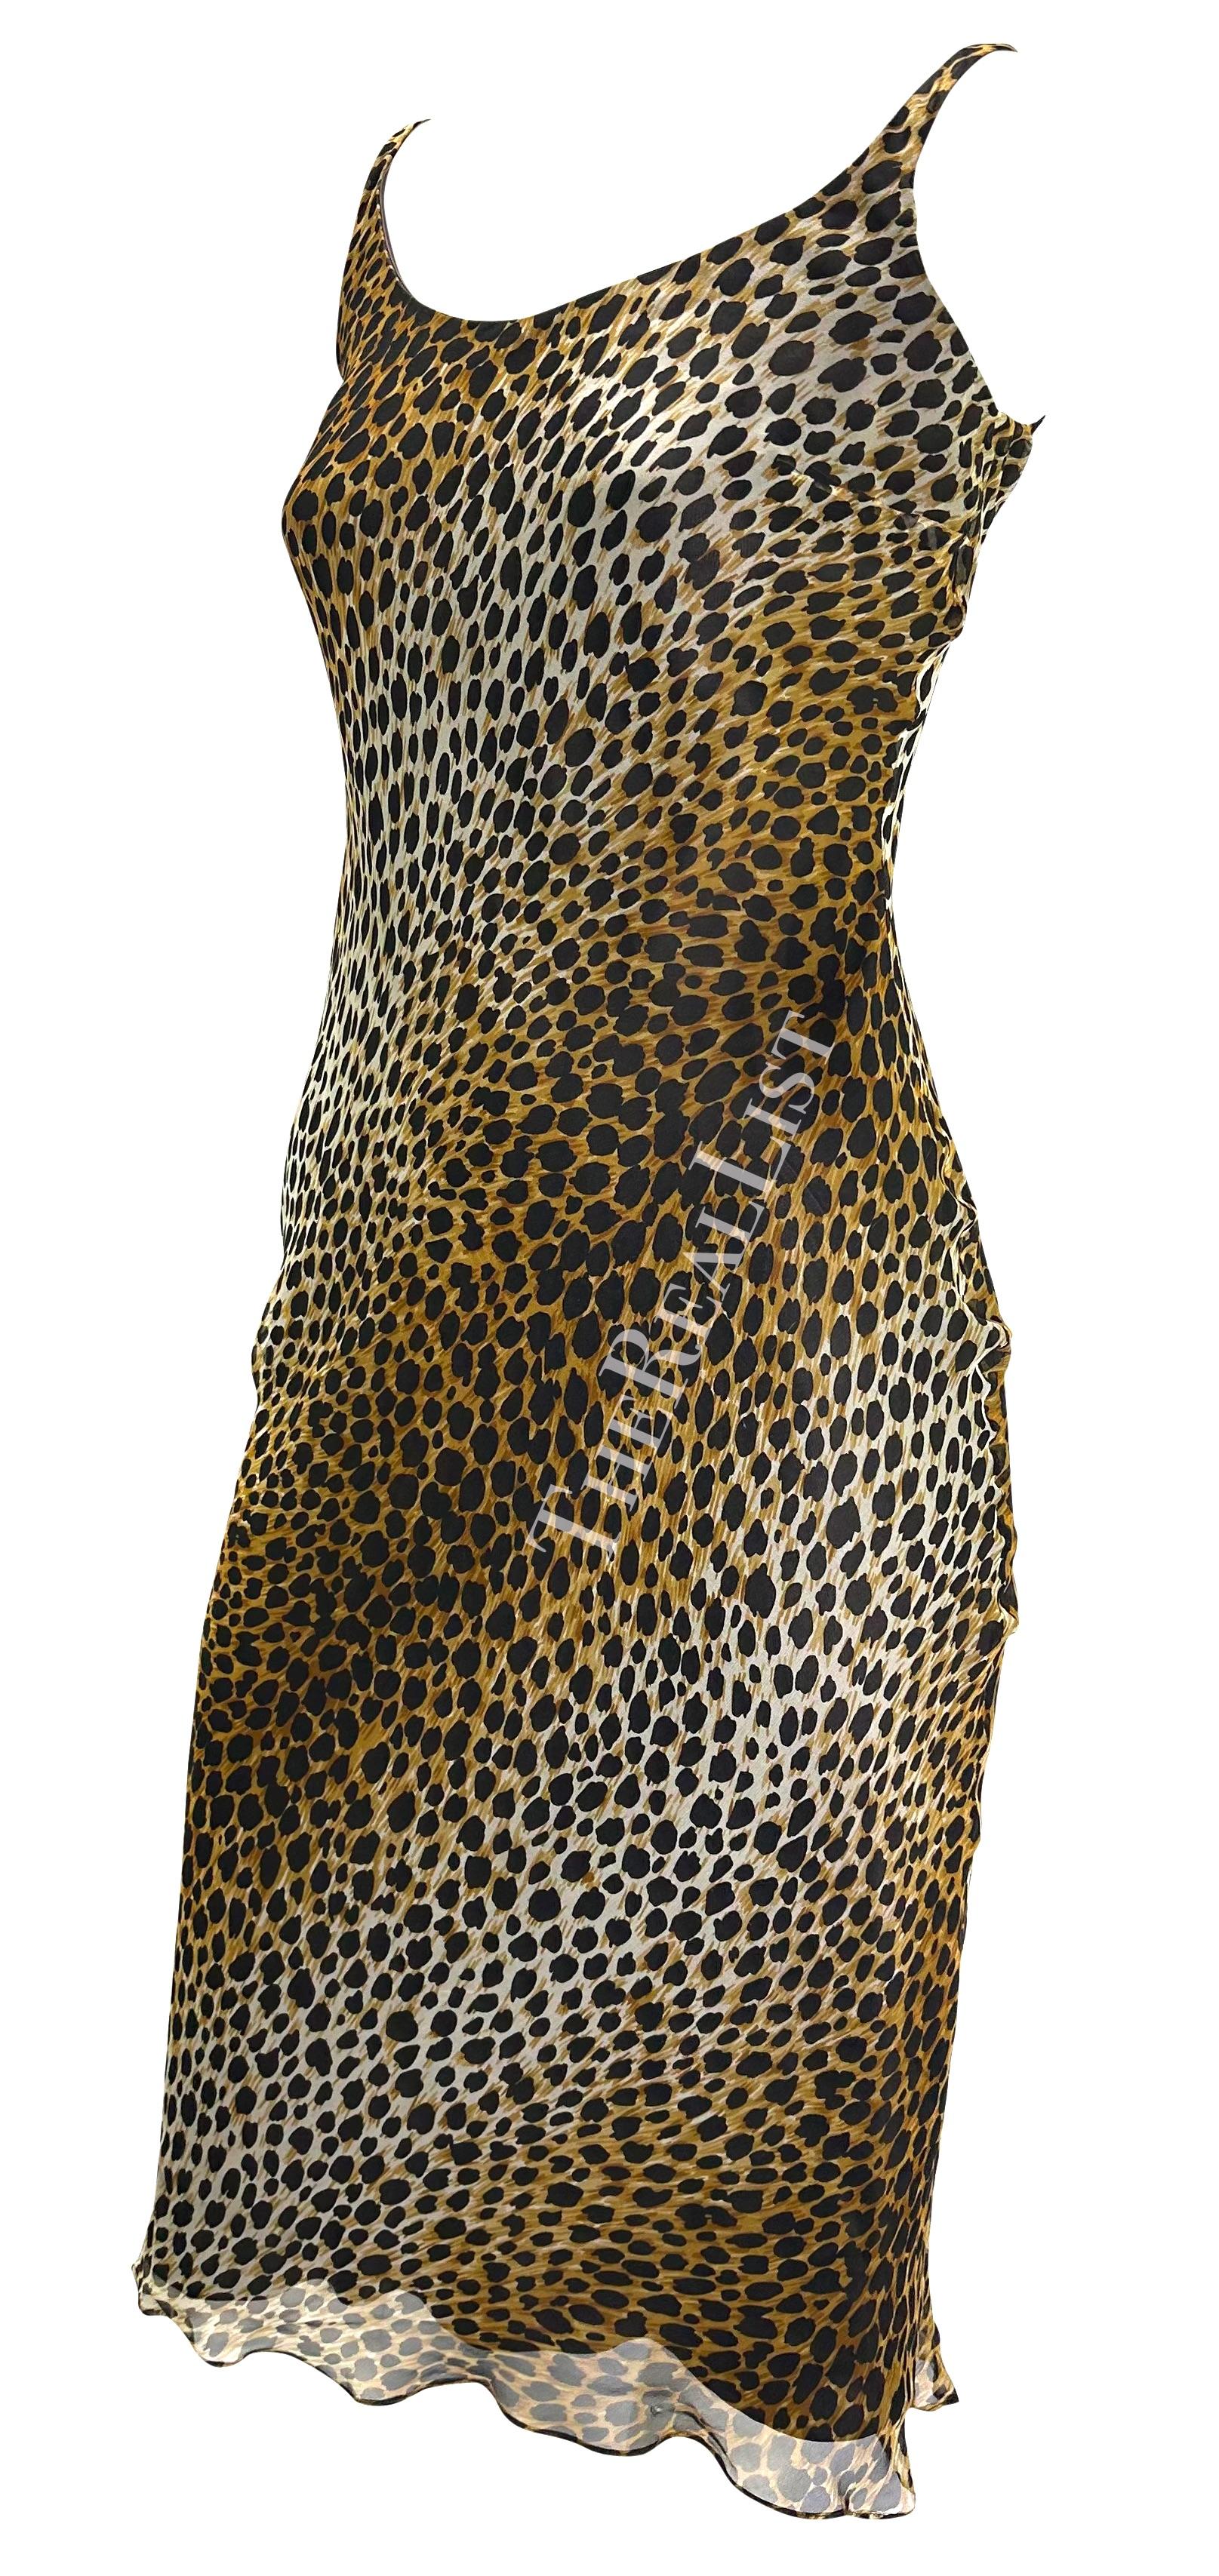 Voici une magnifique robe Dolce and Gabbana à imprimé guépard ombreux. Datant du milieu des années 1990, cette robe présente un large décolleté et de fines bretelles. La robe est complétée par une fine mousseline de soie. 

Mesures approximatives